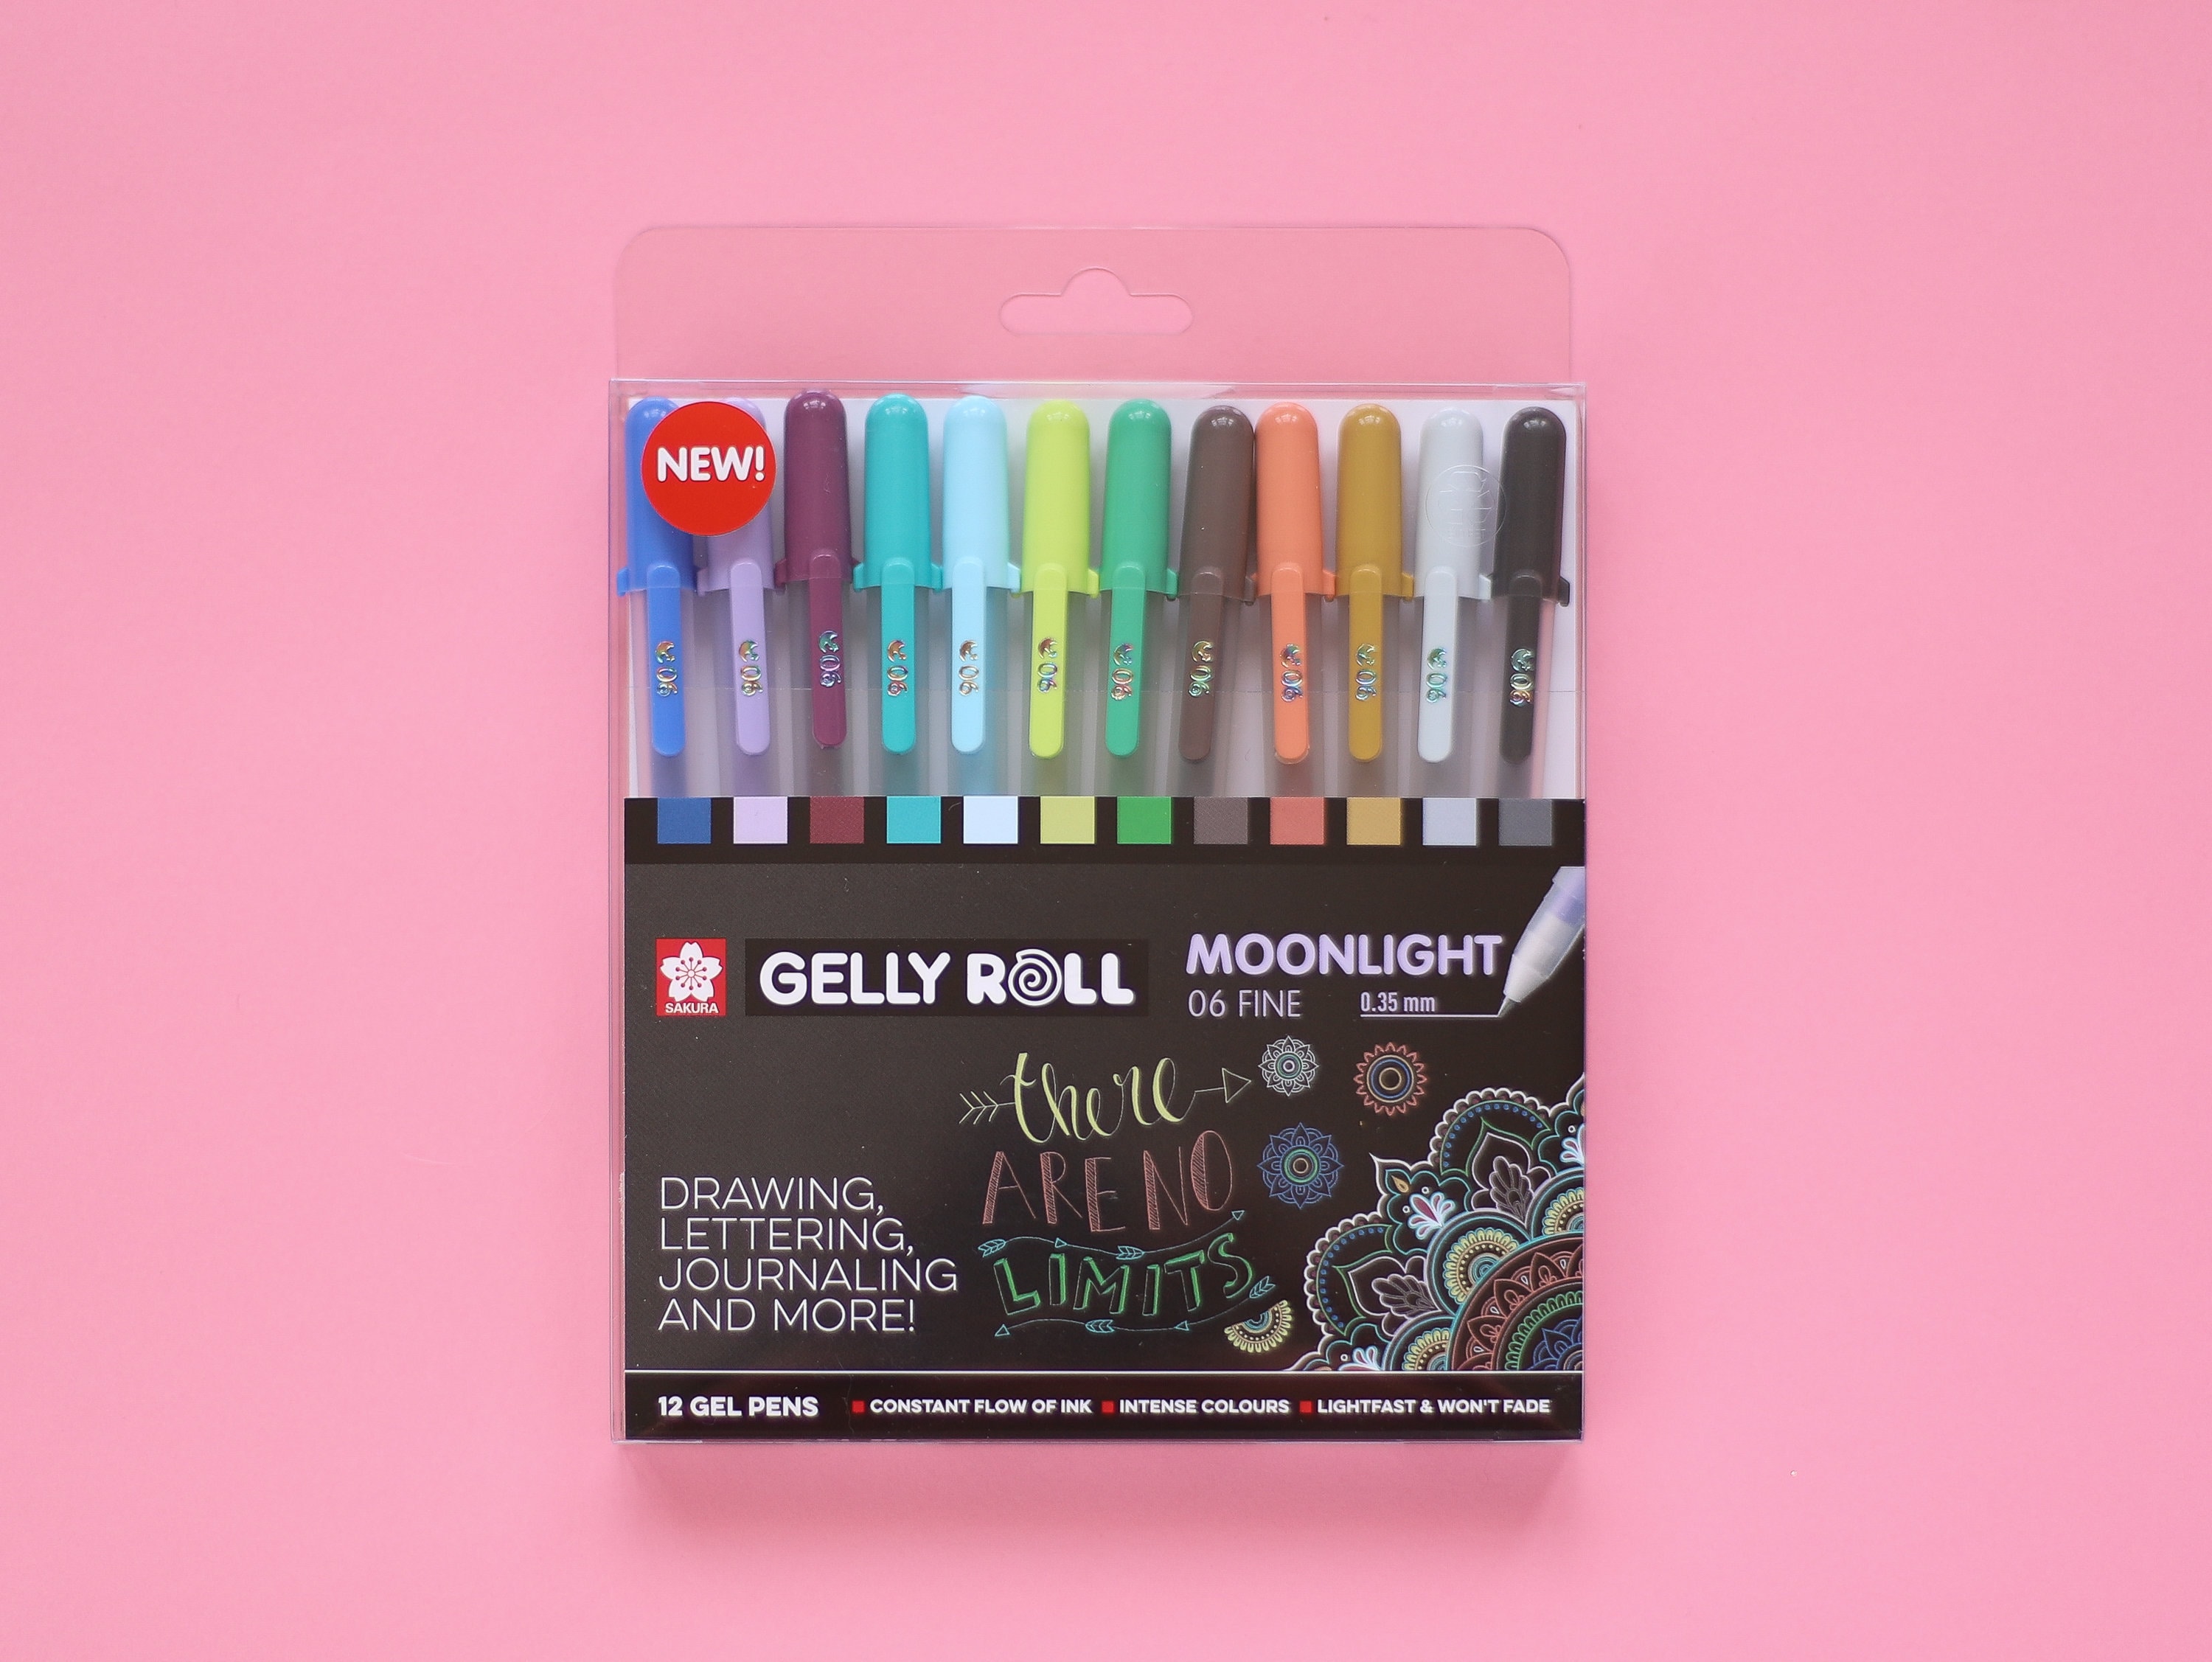 Sakura Gelly Roll Moonlight Muted Gel Pens 